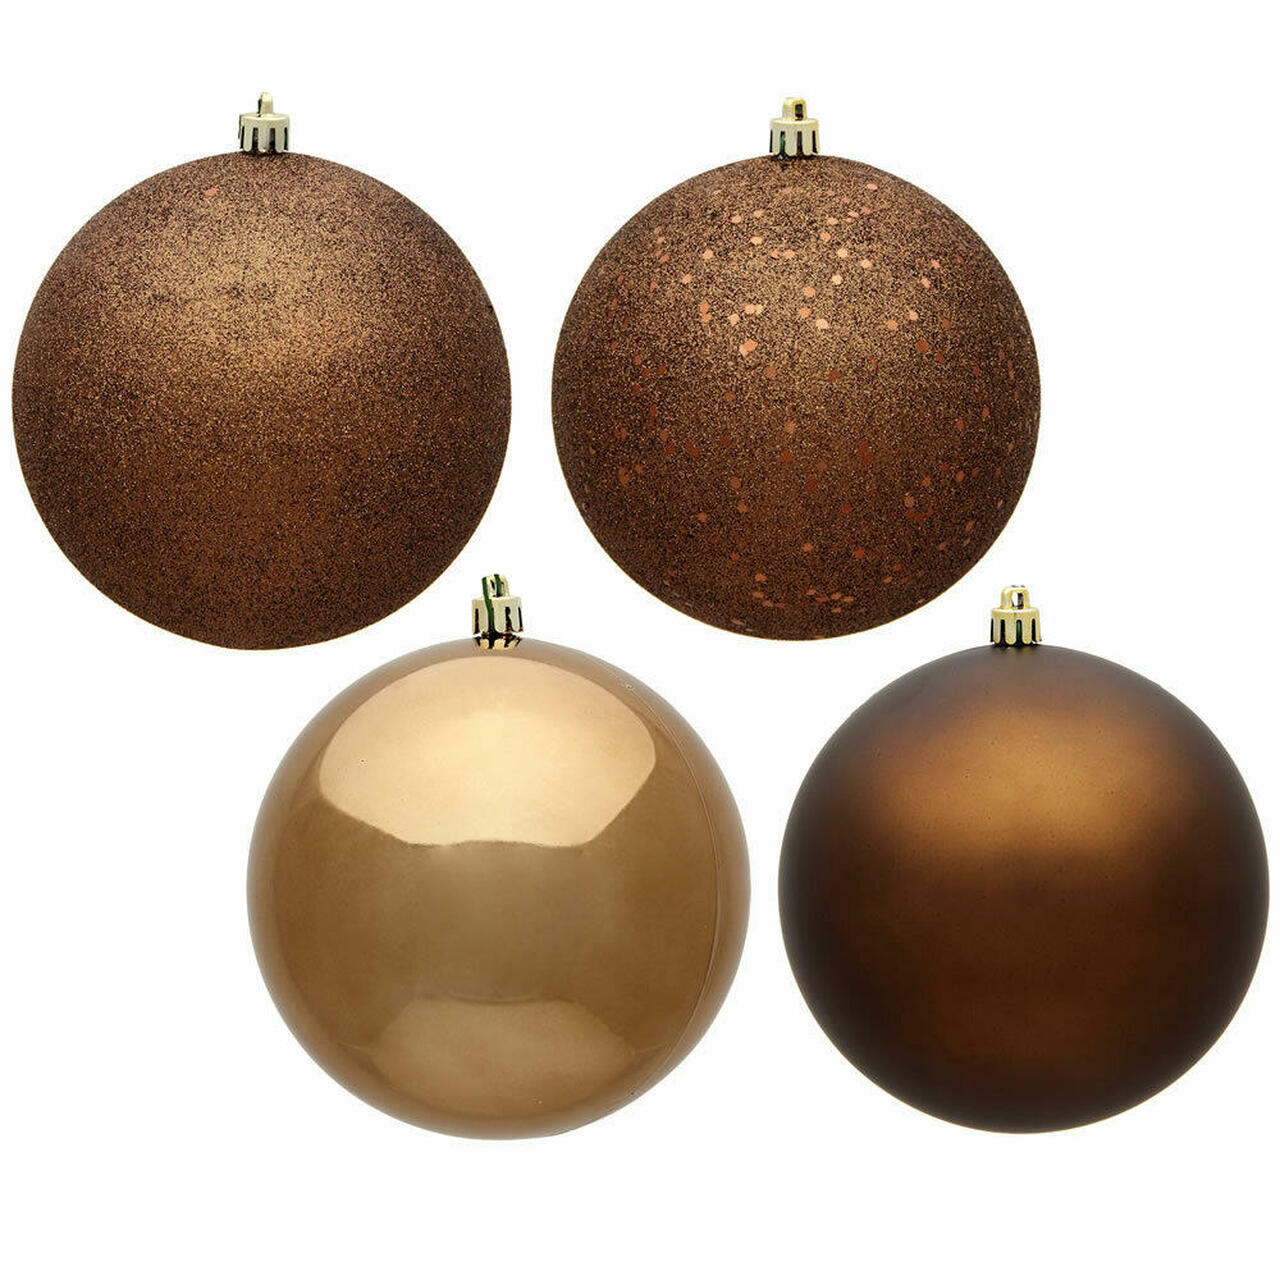 Vickerman 10 inch Mocha 4-Finish Ball Ornament Assortment, 4 per Bag (SET OF 4)